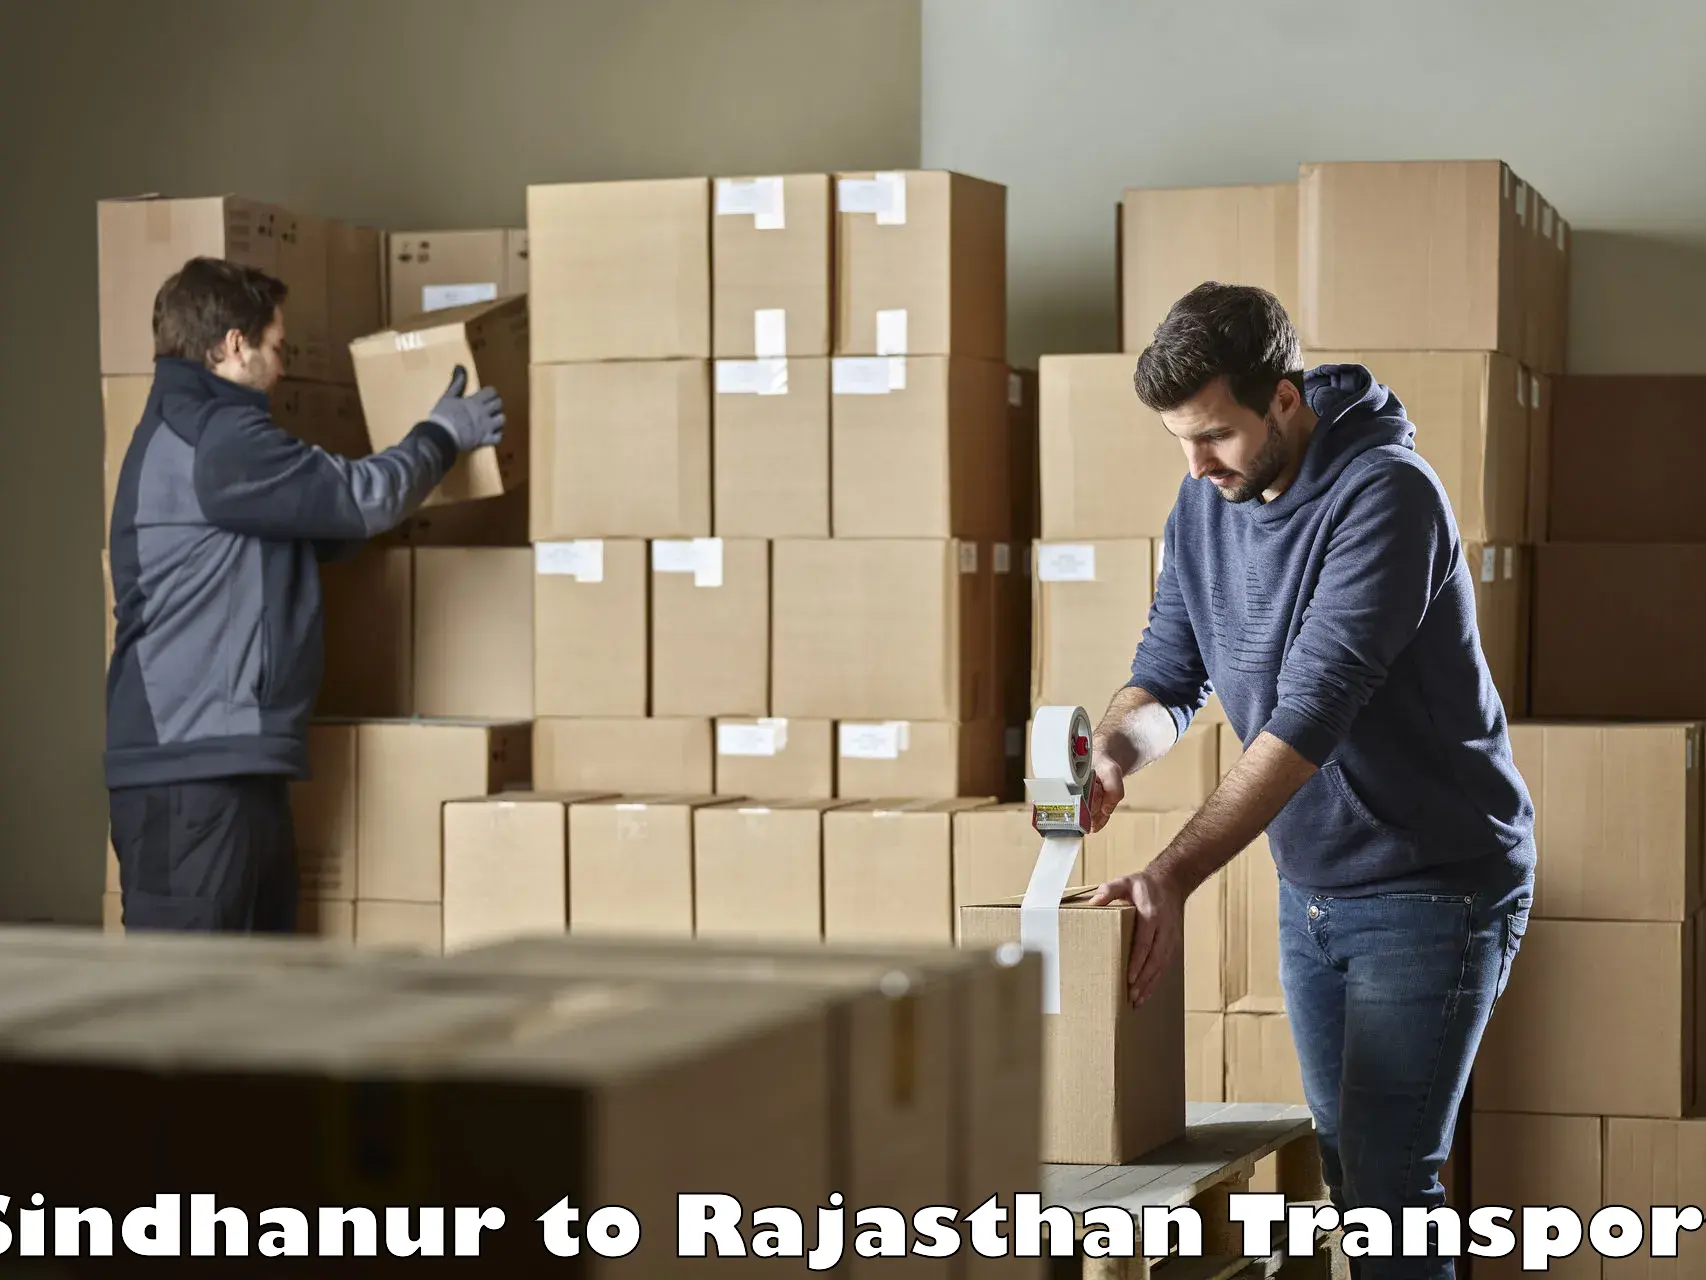 Furniture transport service Sindhanur to Bassi